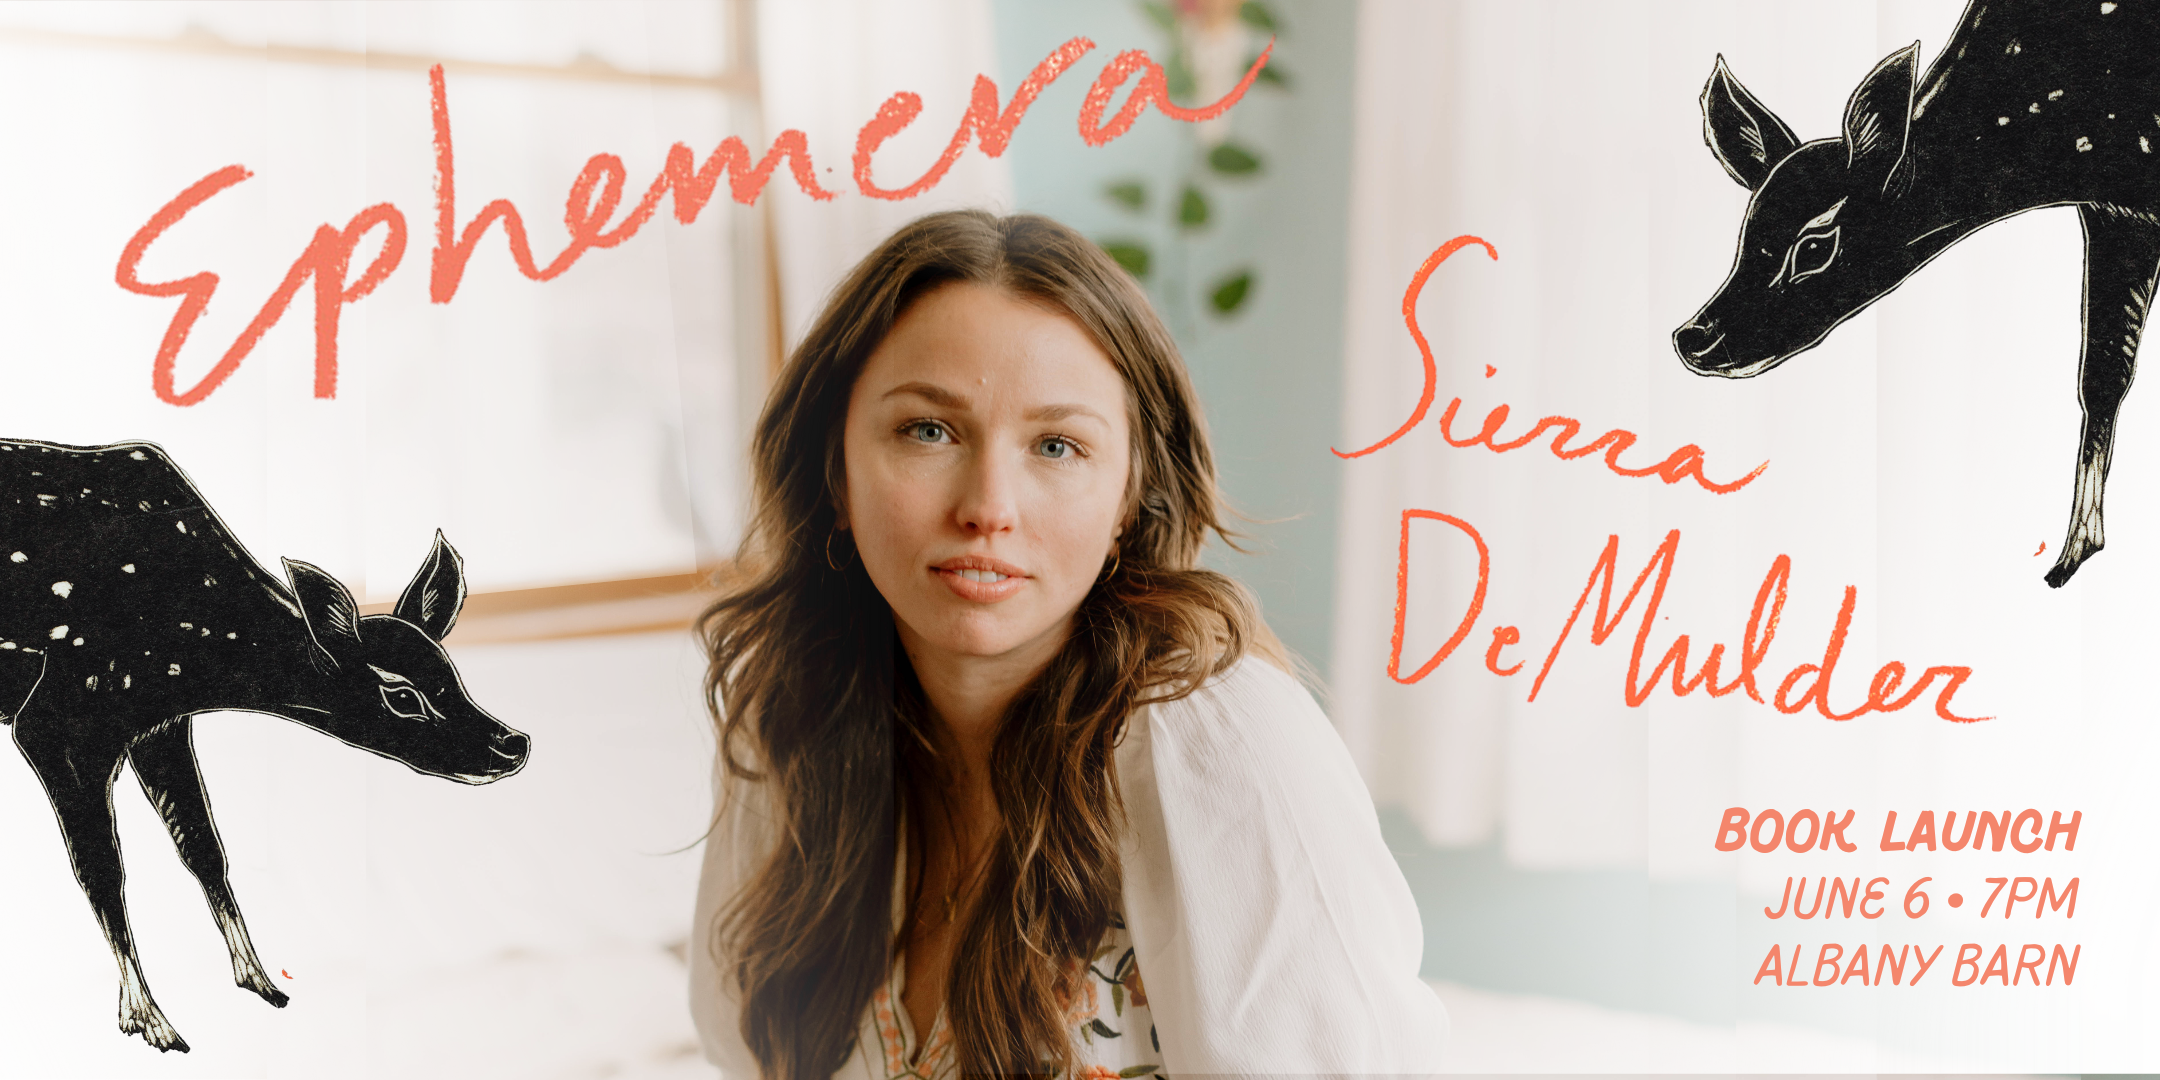 Ephemera Book Launch with Sierra DeMulder - Hudson Valley Writers Guild